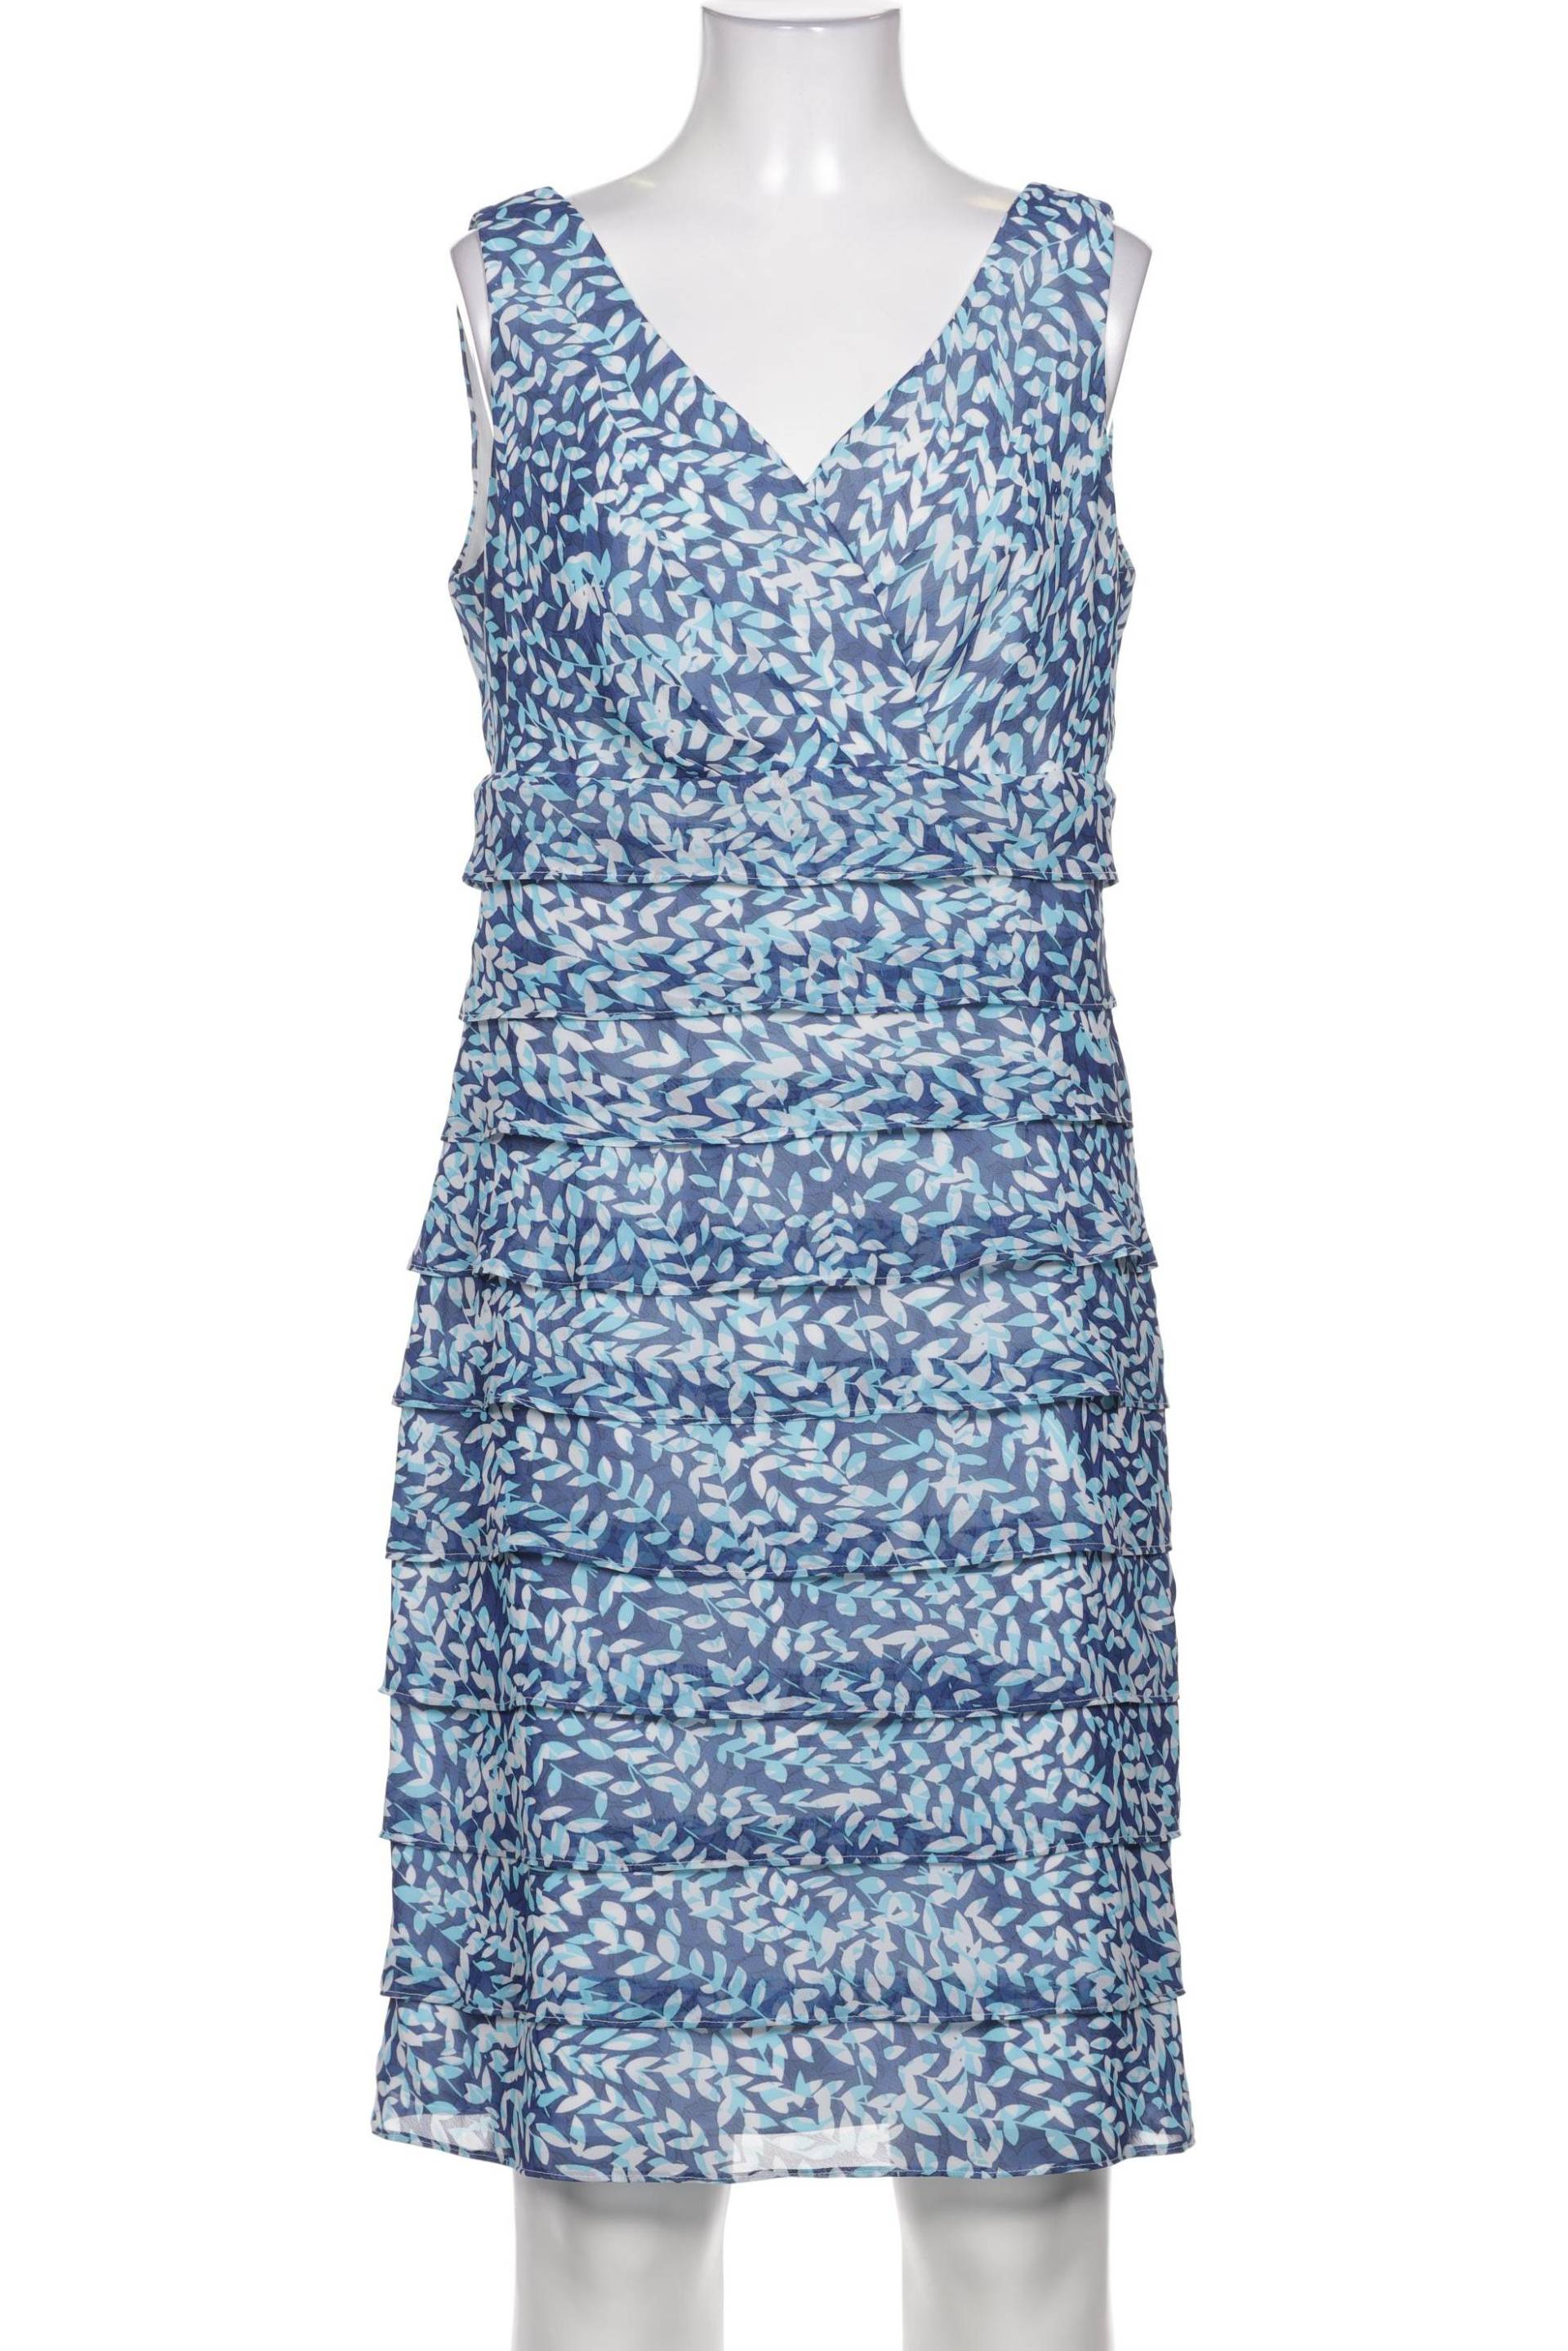 BiBA Damen Kleid, blau, Gr. 38 von BiBA